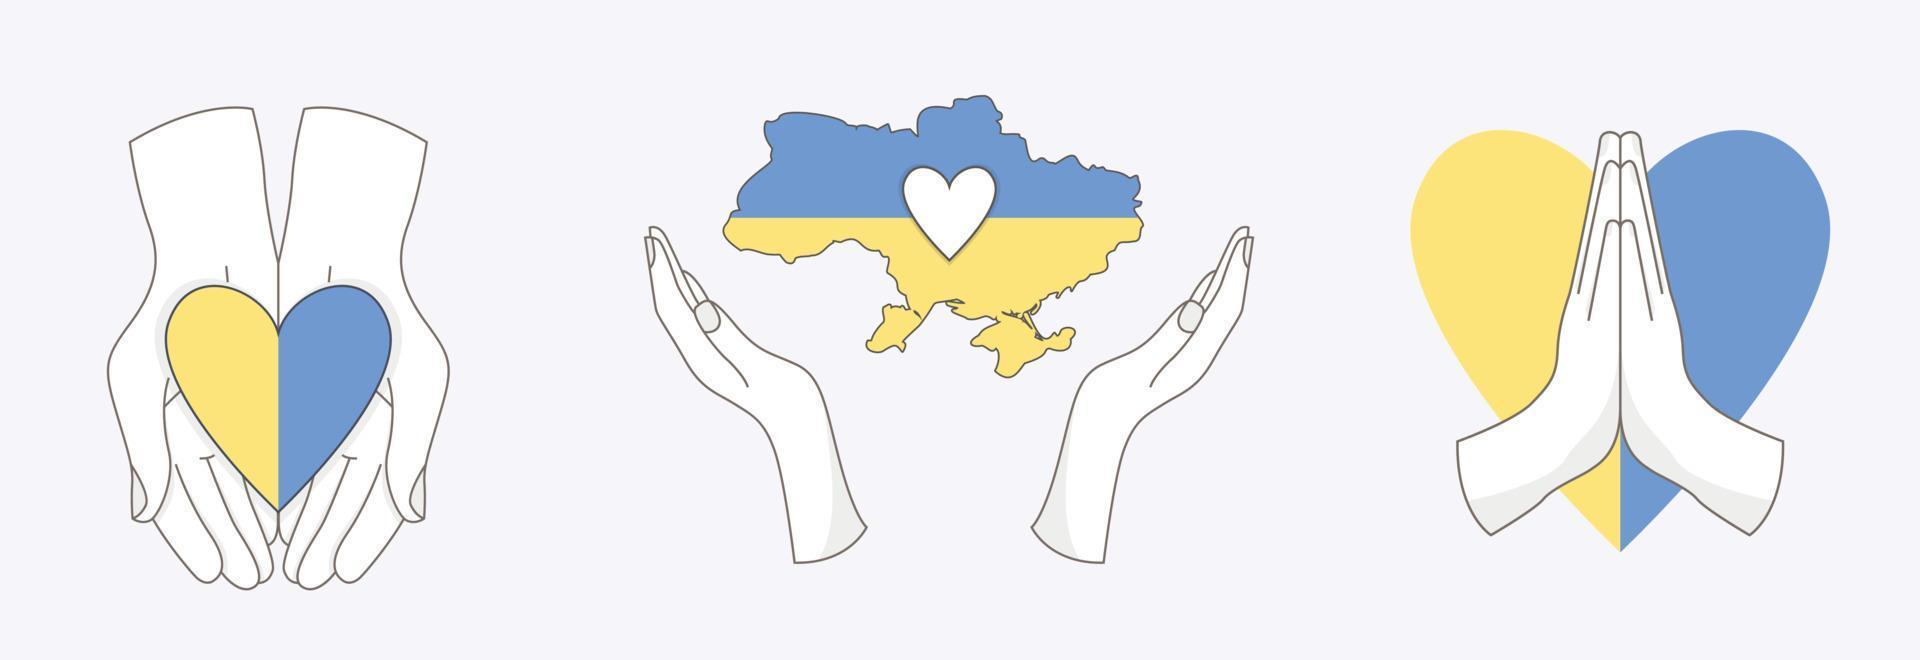 conjunto de elementos ucranianos con diferentes manos. bandera del corazón y mapa de ucrania. salvar el concepto de Ucrania. iconos planos vectoriales aislados en fondo blanco vector